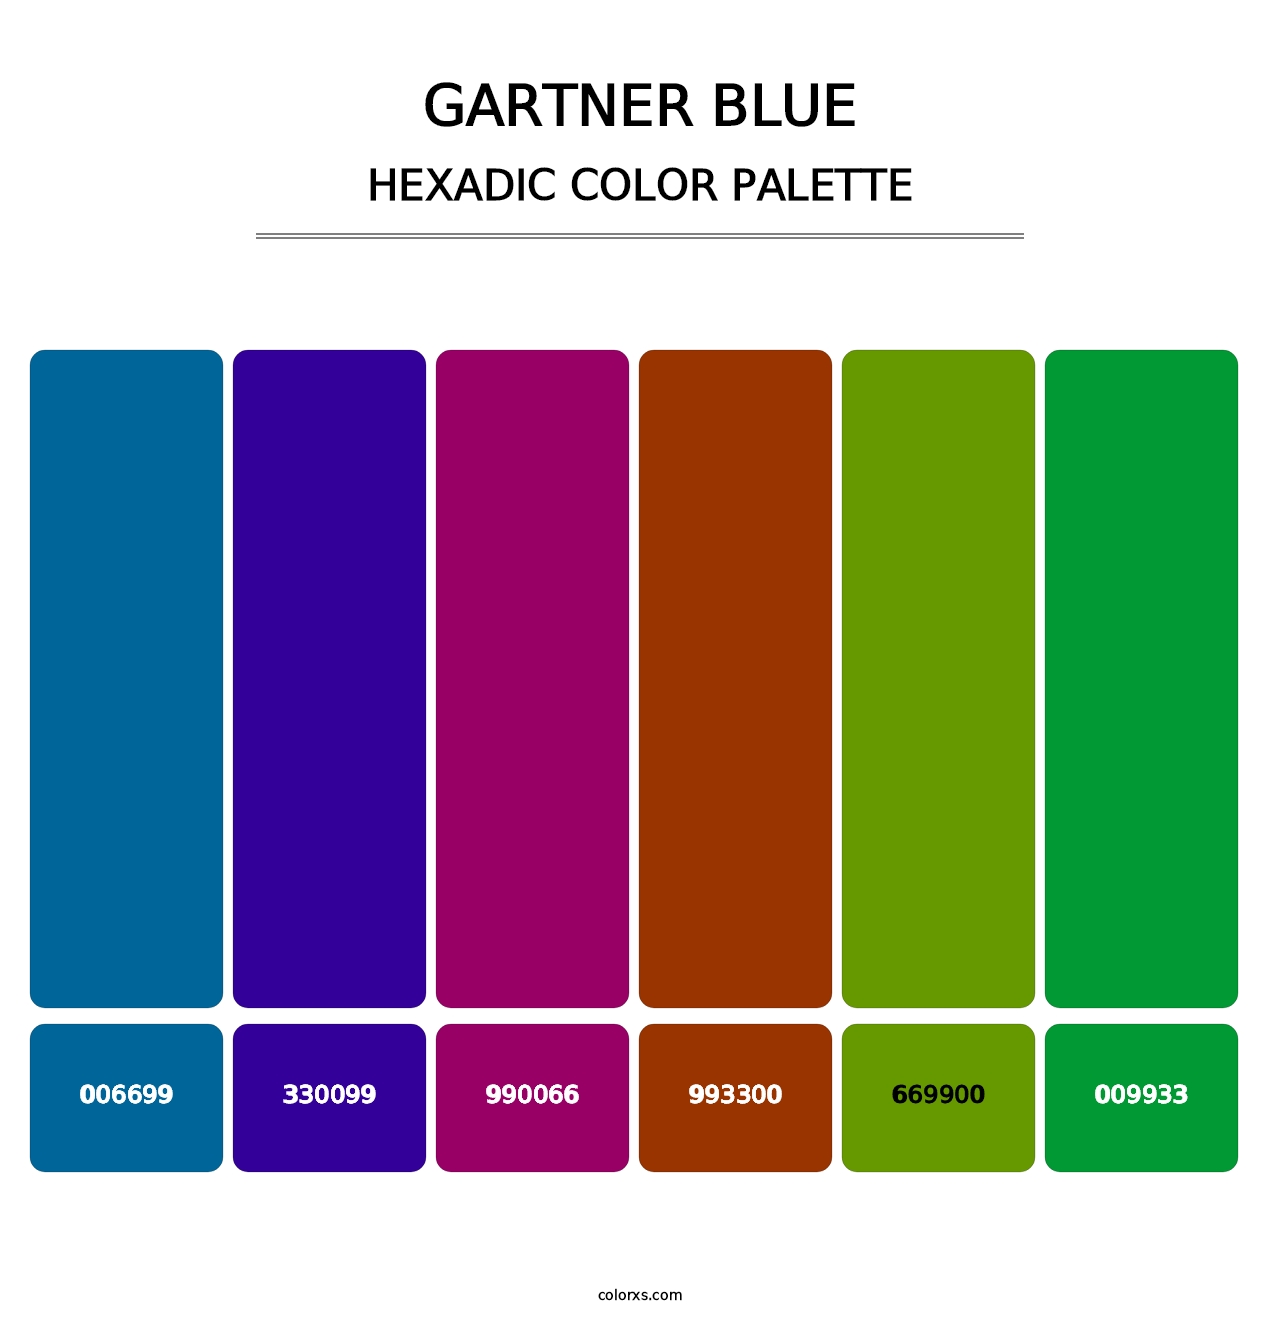 Gartner Blue - Hexadic Color Palette